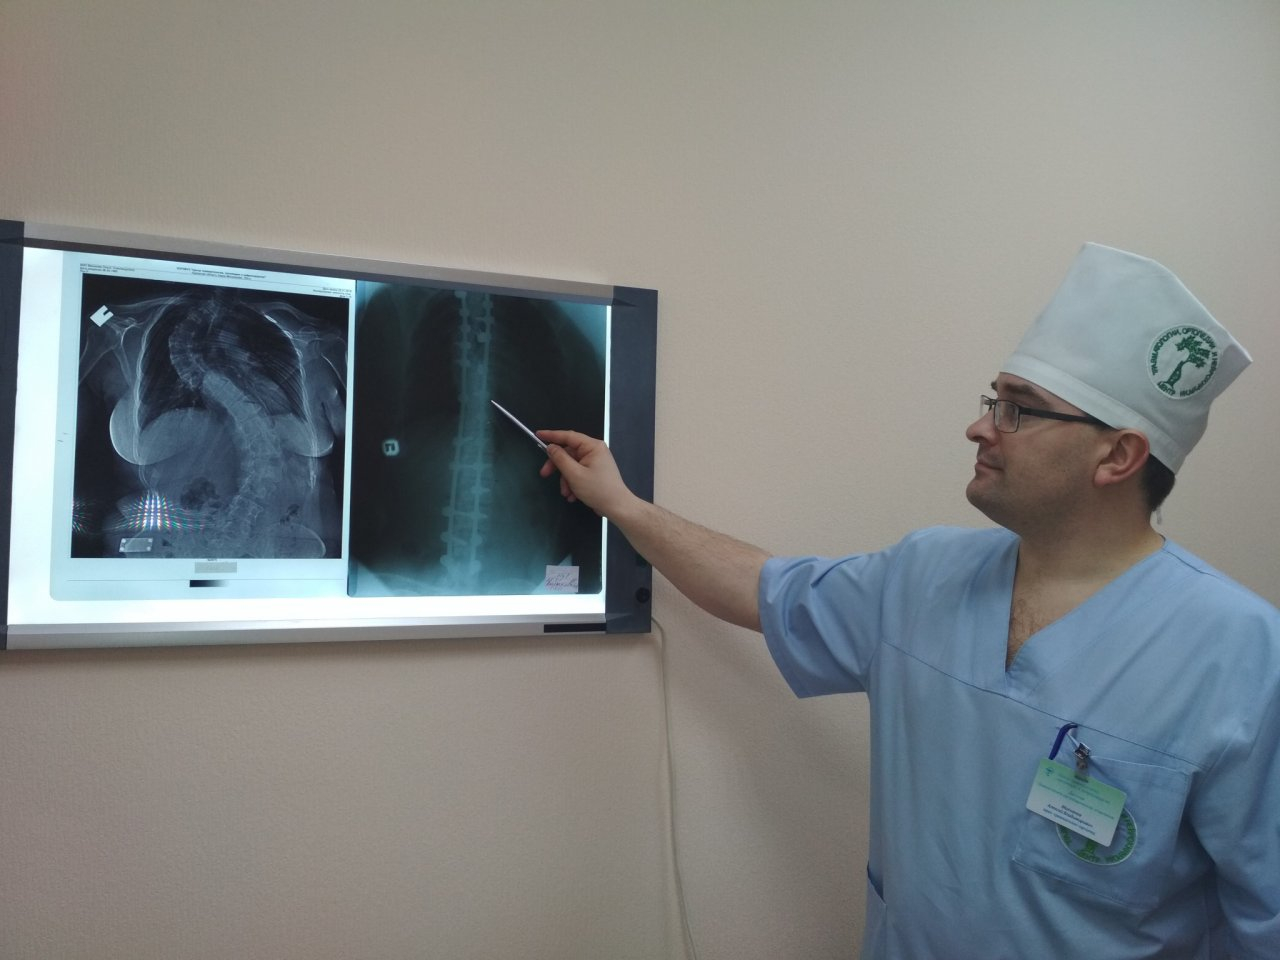 В Кирове пациентке провели несколько сложнейших операций по удлинению конечностей